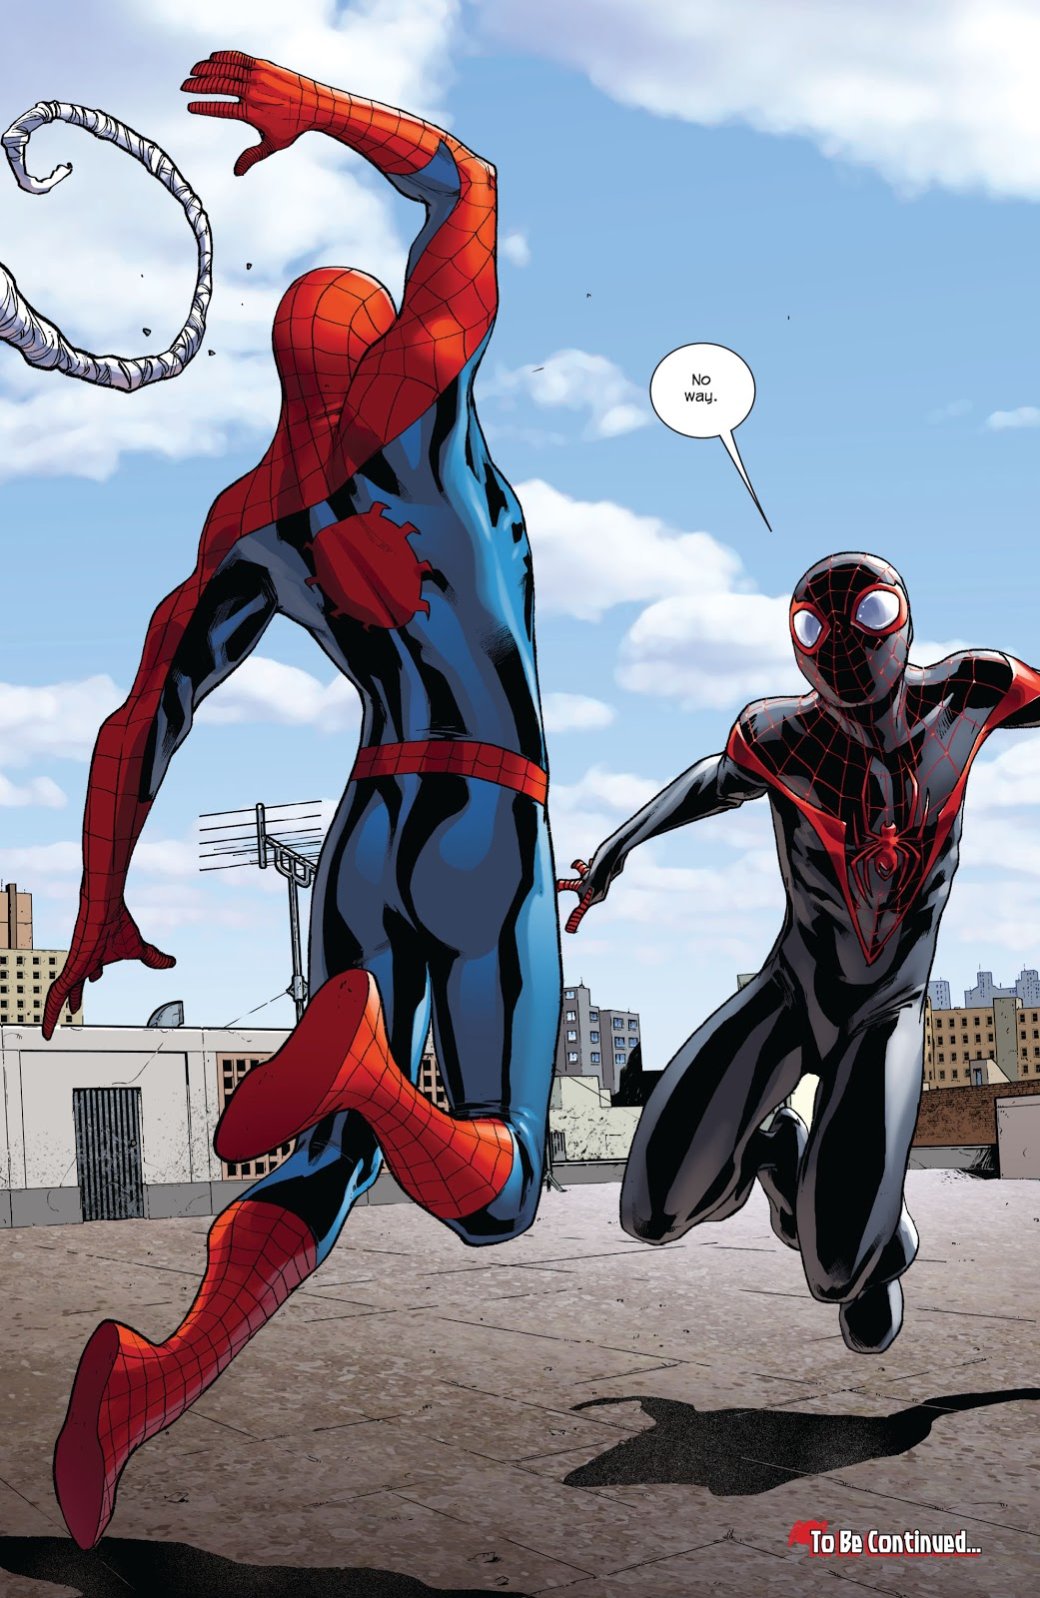 Галерея Spider-Men II доказывает, что сюжет «два Человека-Паука против общей угрозы» не работает дважды - 1 фото